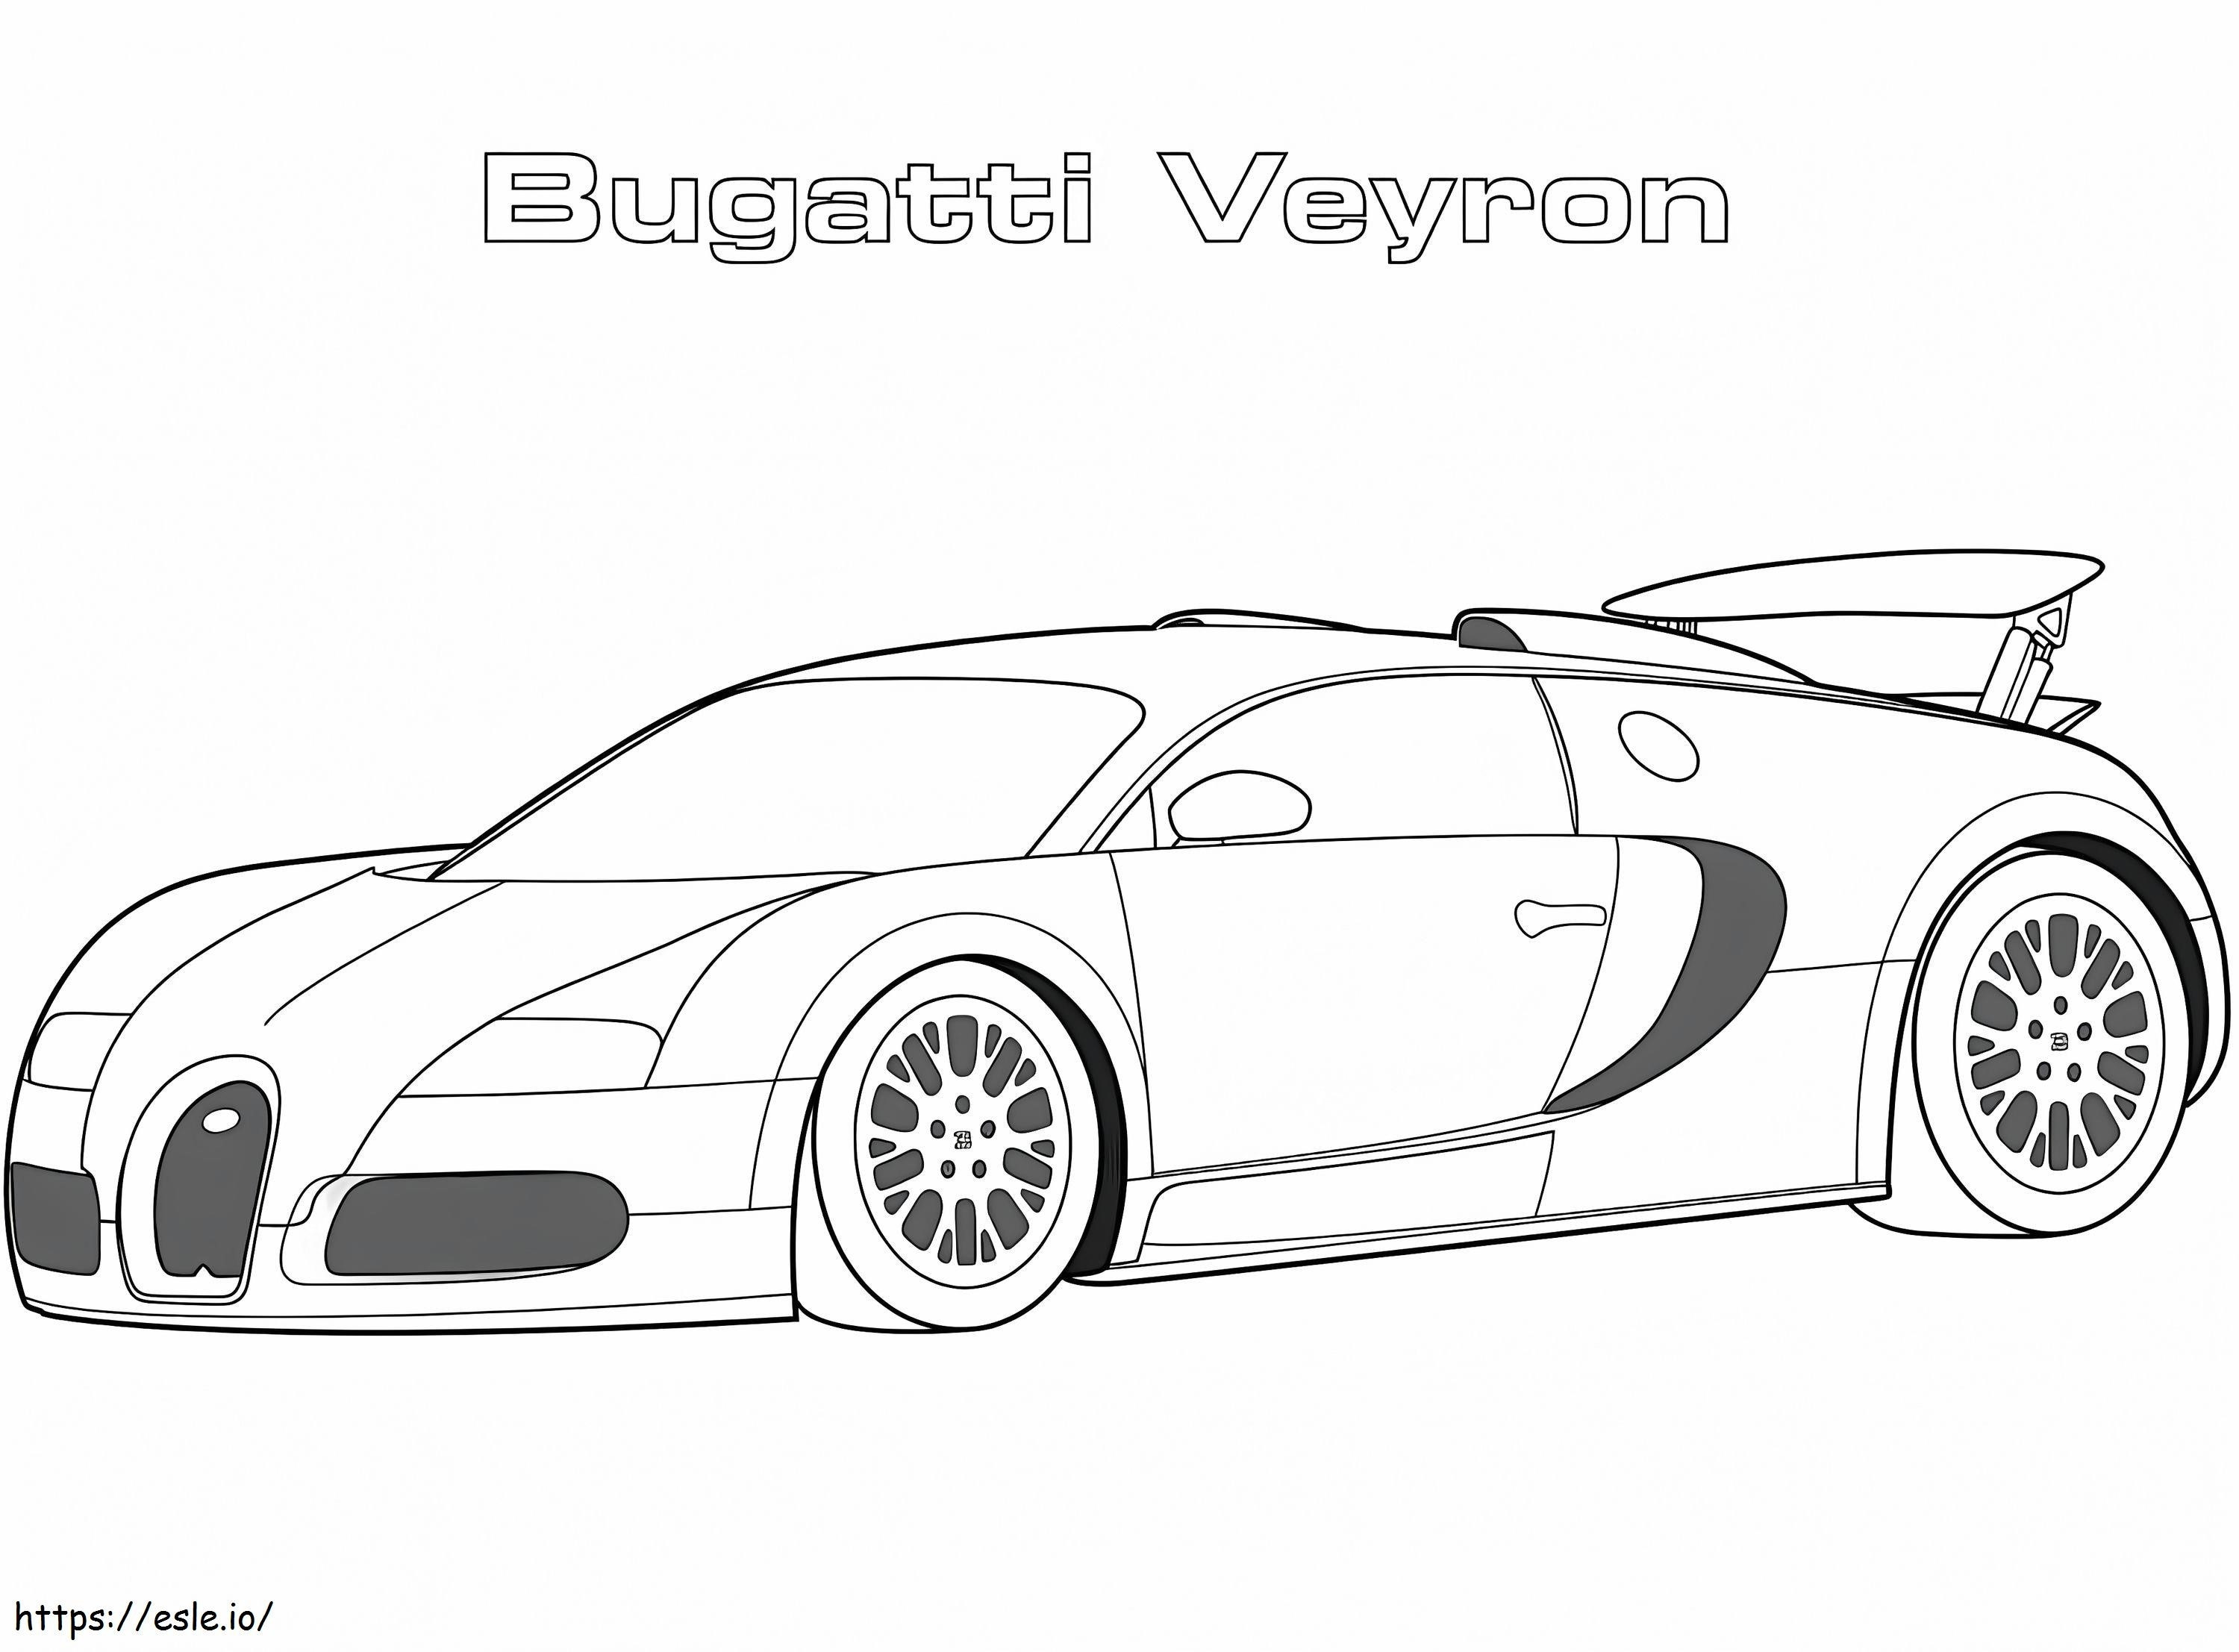 Coloriage Bugatti Veyron 2005 à imprimer dessin